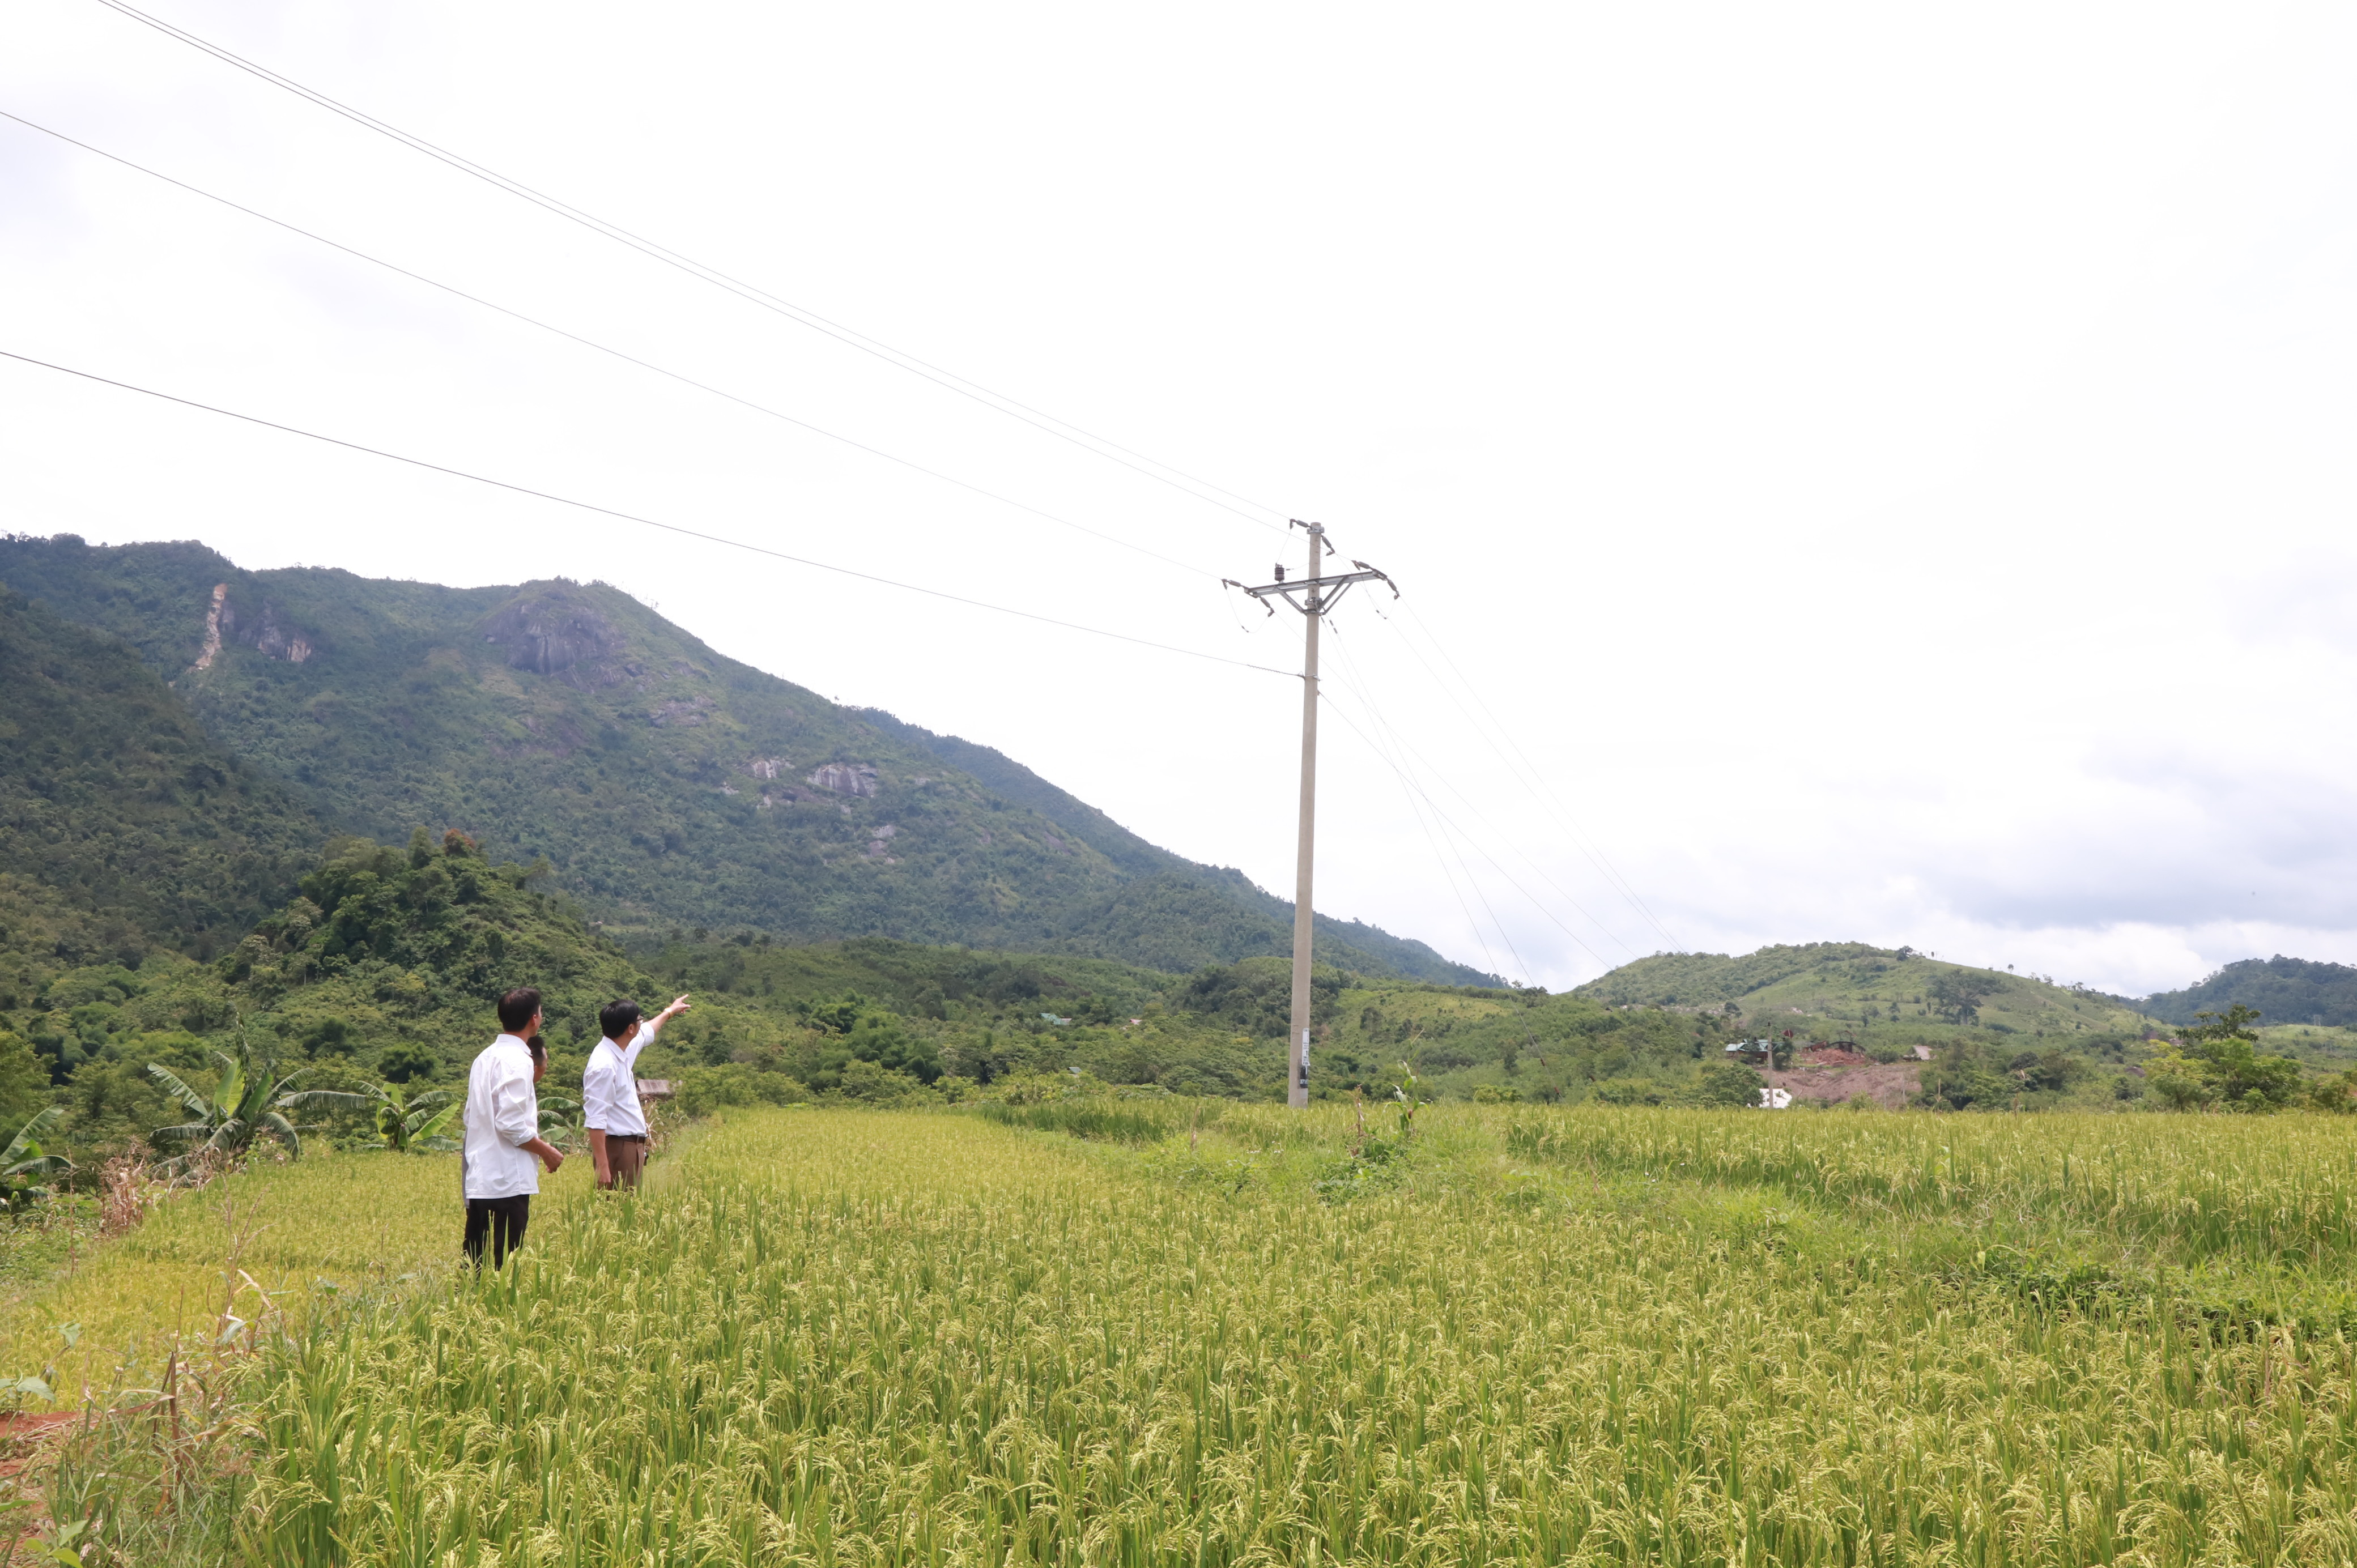 Ở xã Tri Lễ, huyện Quế Phong, mặc dù đã có đường điện chạy qua nhưng nhiều bản vẫn chưa có điện lưới quốc gia. Ảnh: Thành Duy